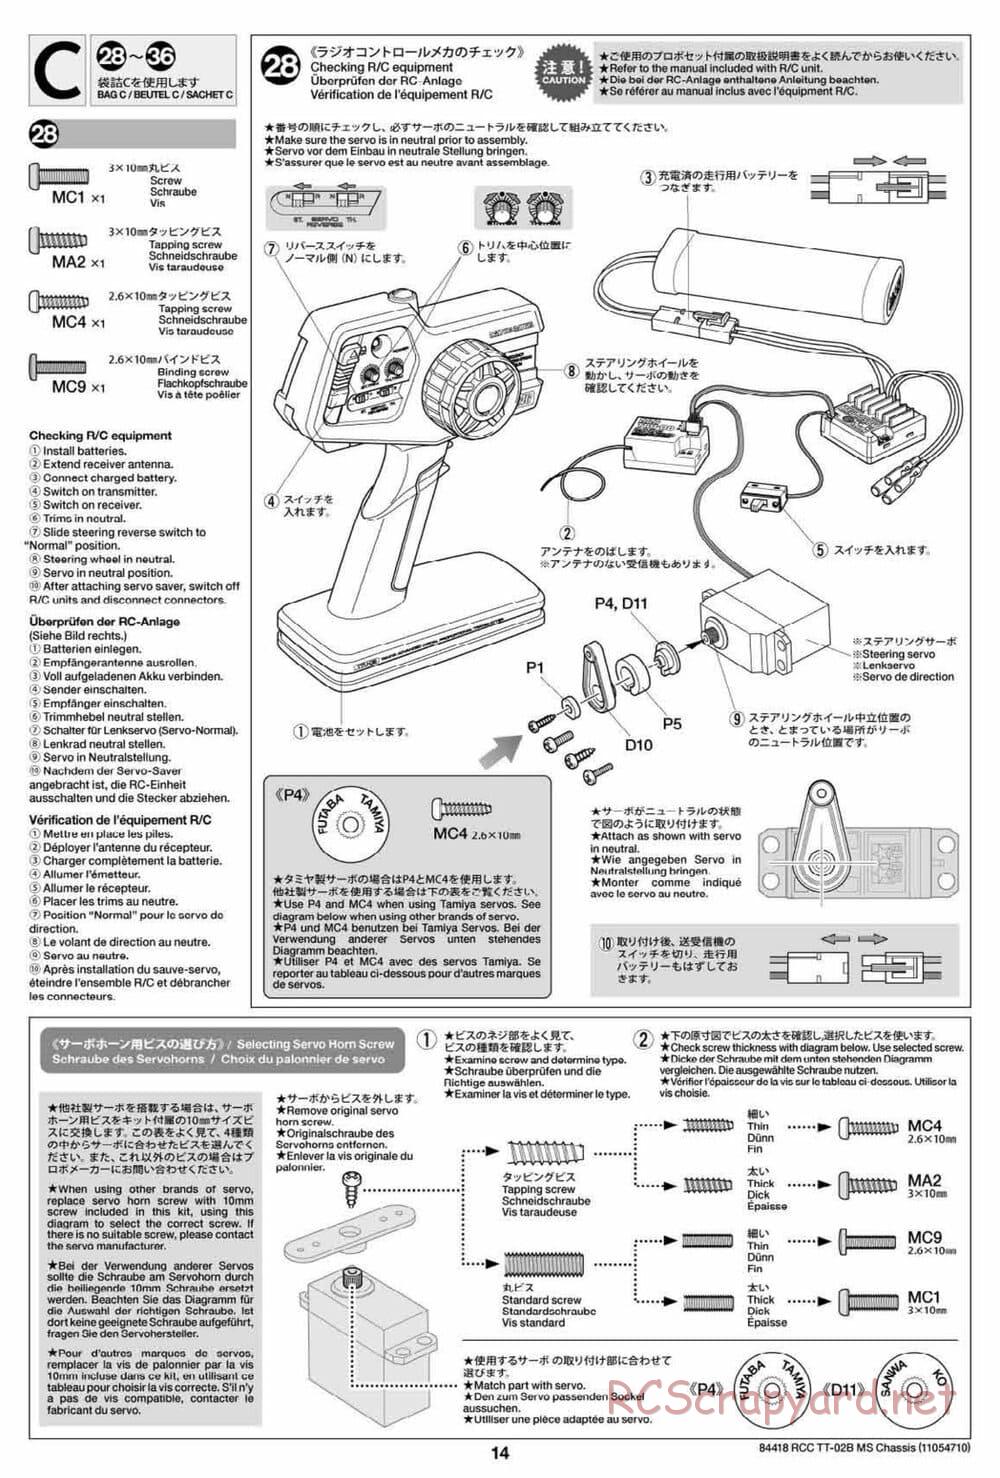 Tamiya - TT-02B MS Chassis - Manual - Page 14